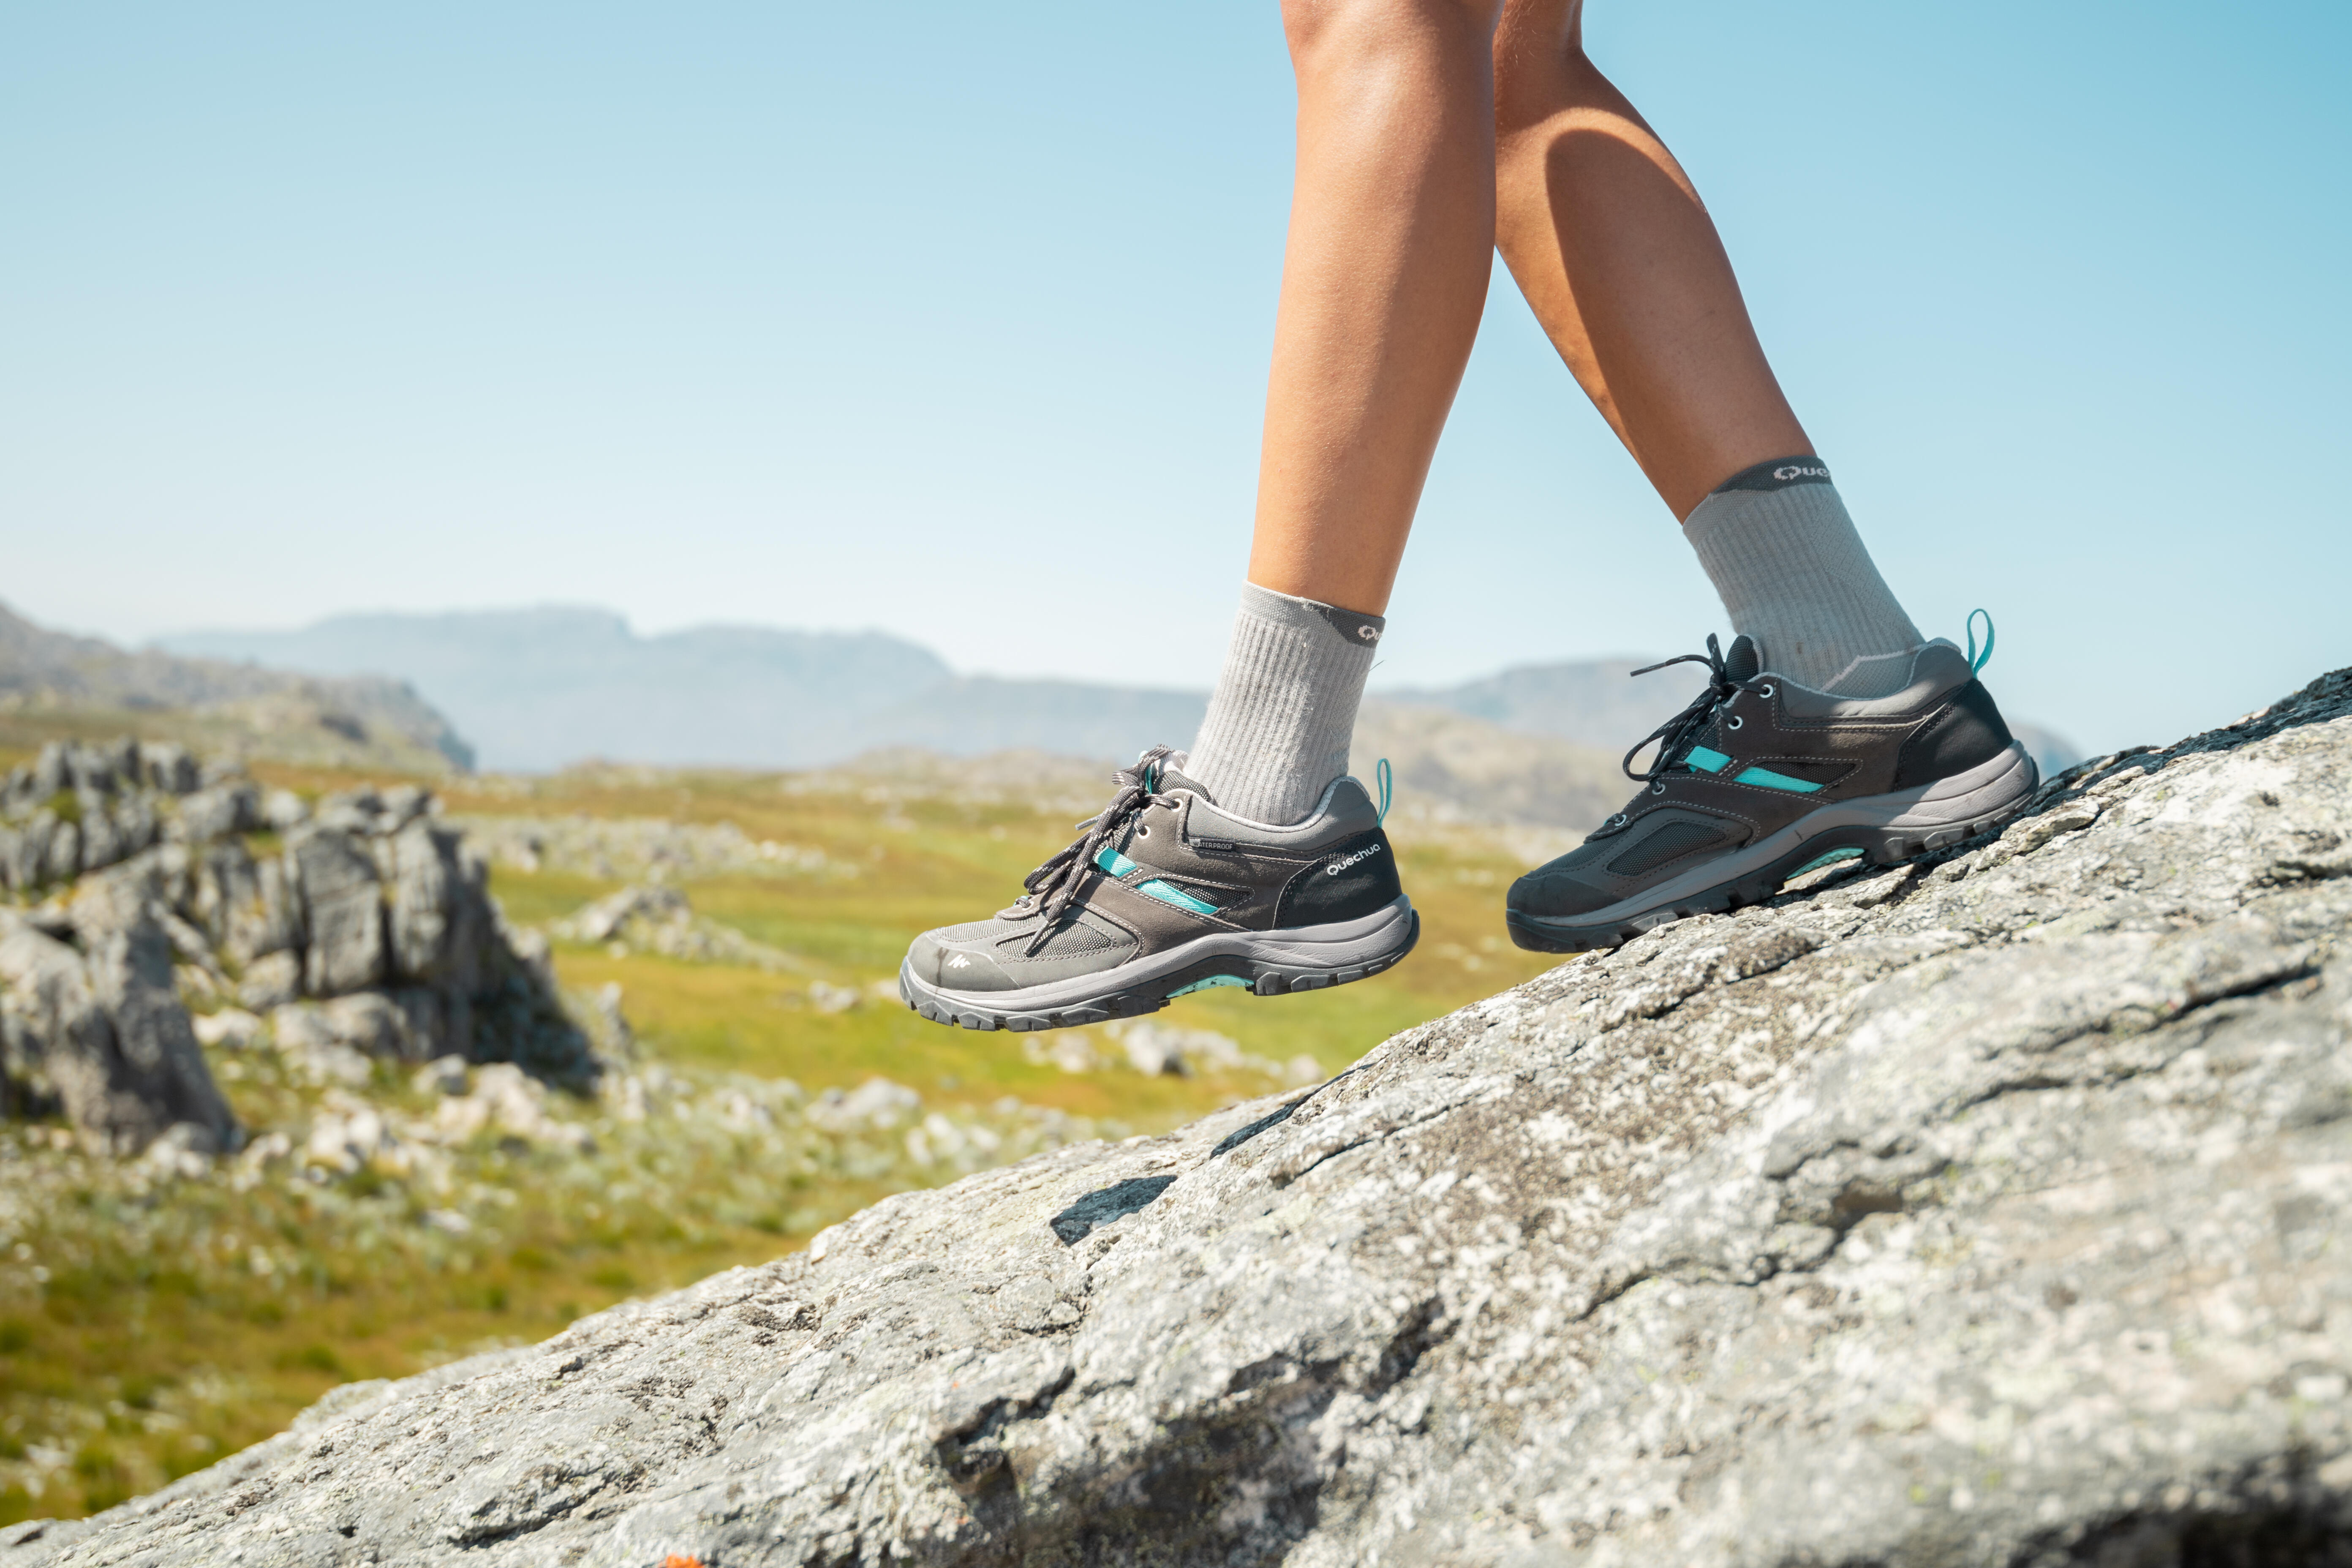 Chaussures de randonnée imperméables femme – MH 100 gris/bleu - QUECHUA